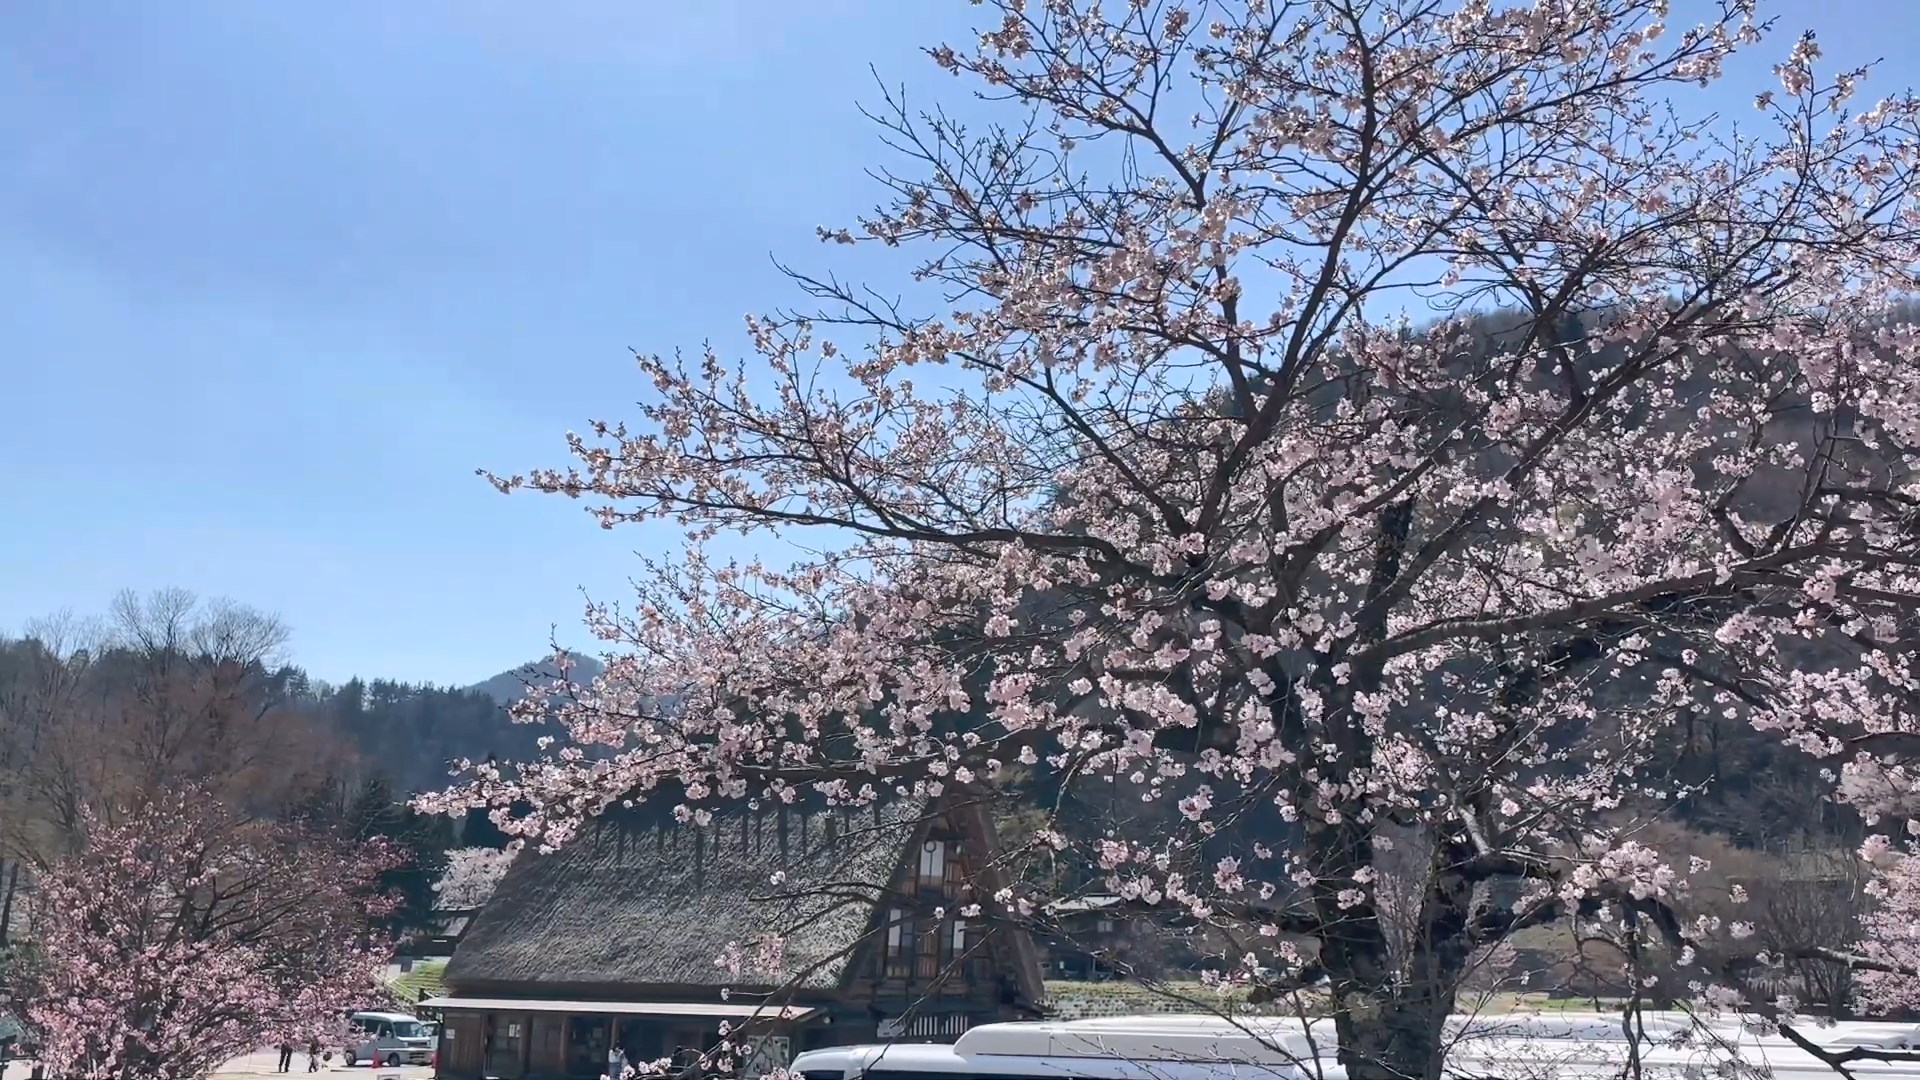 桜咲く白川郷の春　Spring in Shirakawago with cherry blossoms  c.jpg